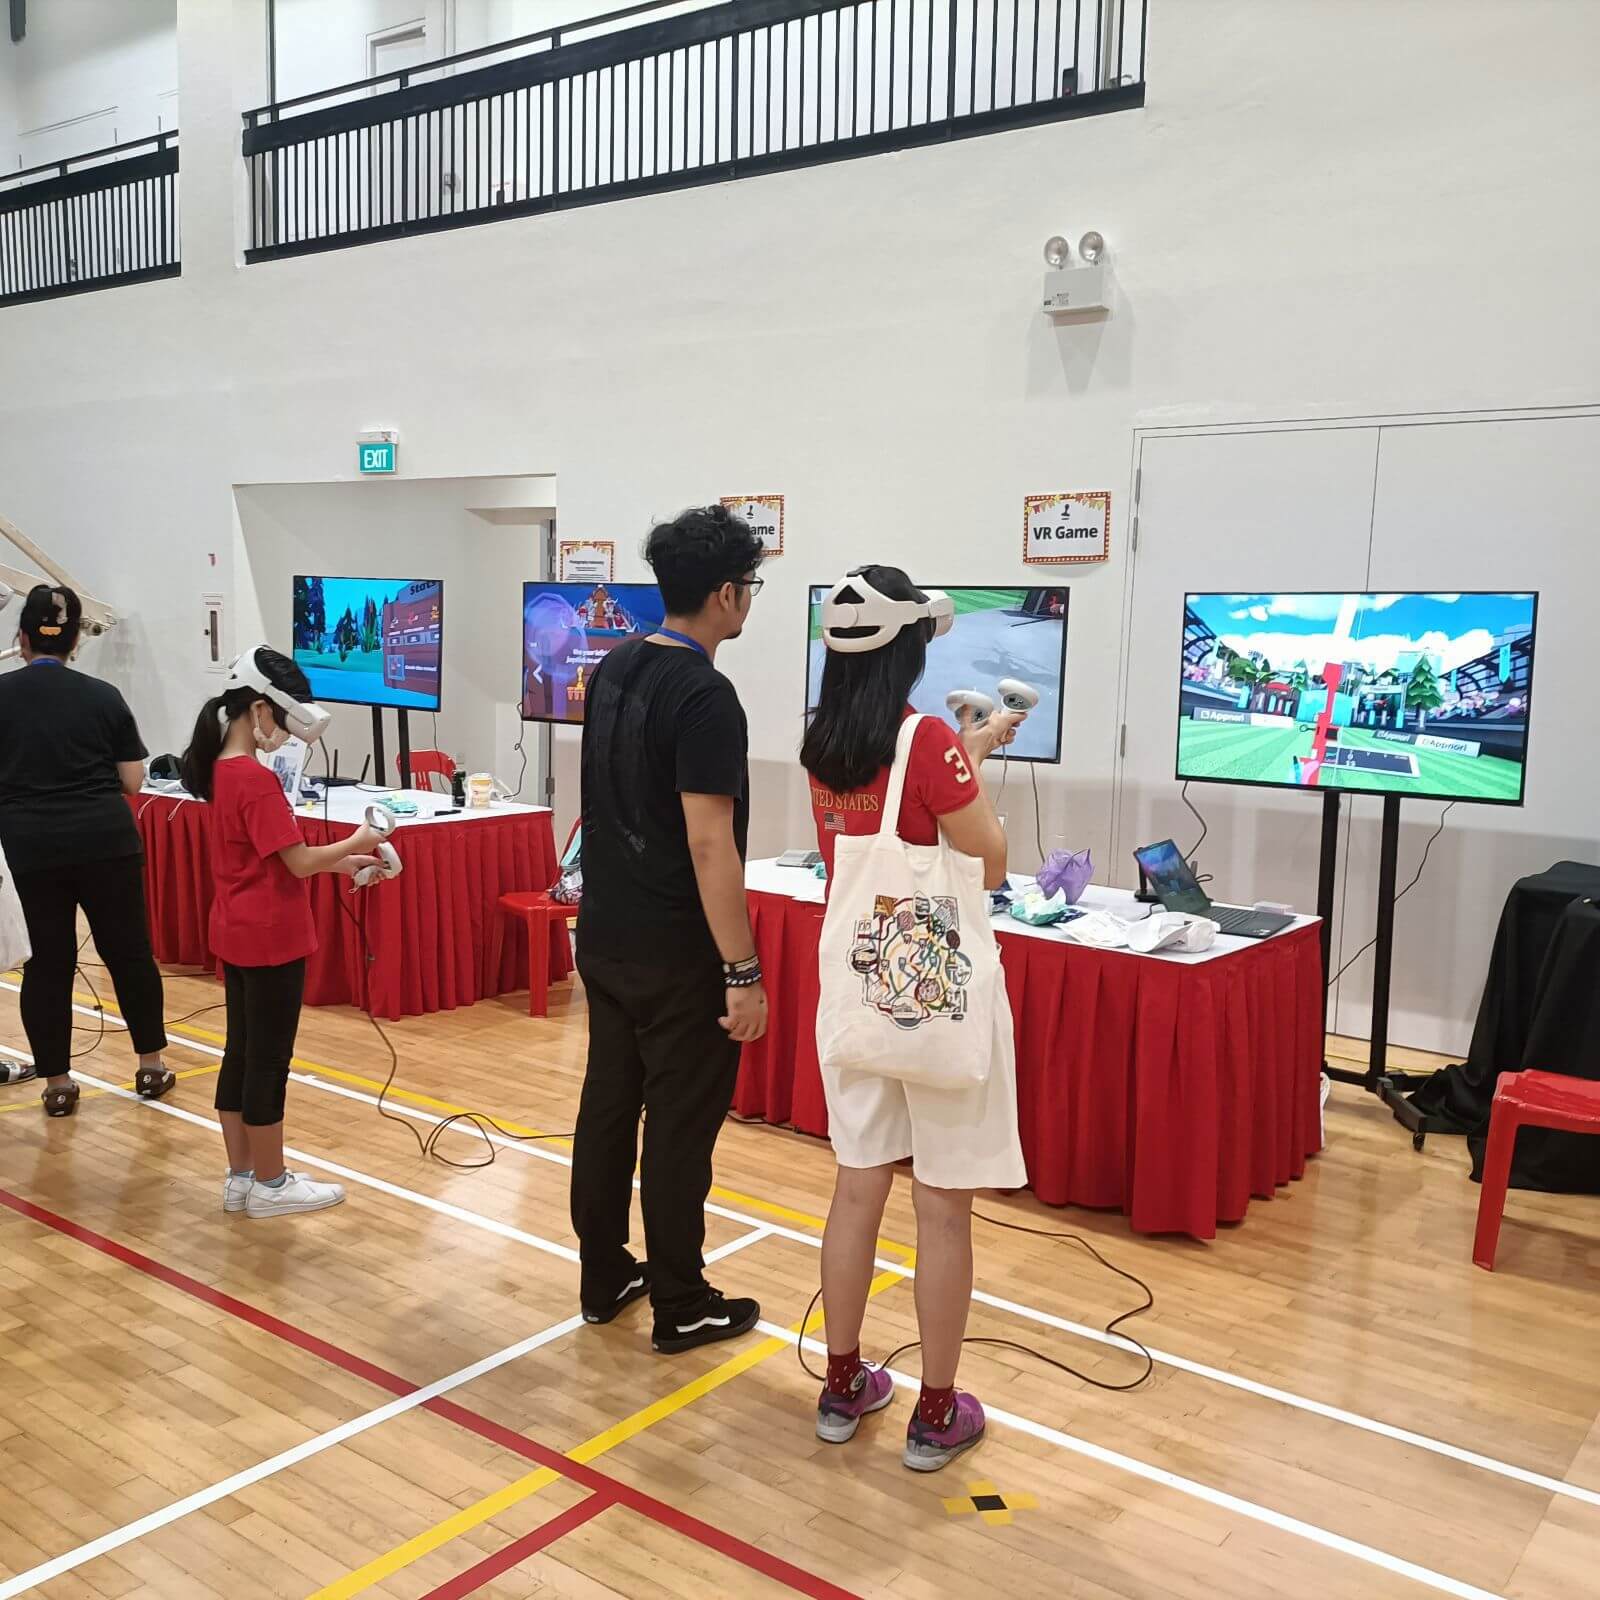 (已成交)Virtual Reality Arcade And Event Company At Bugis For Sale